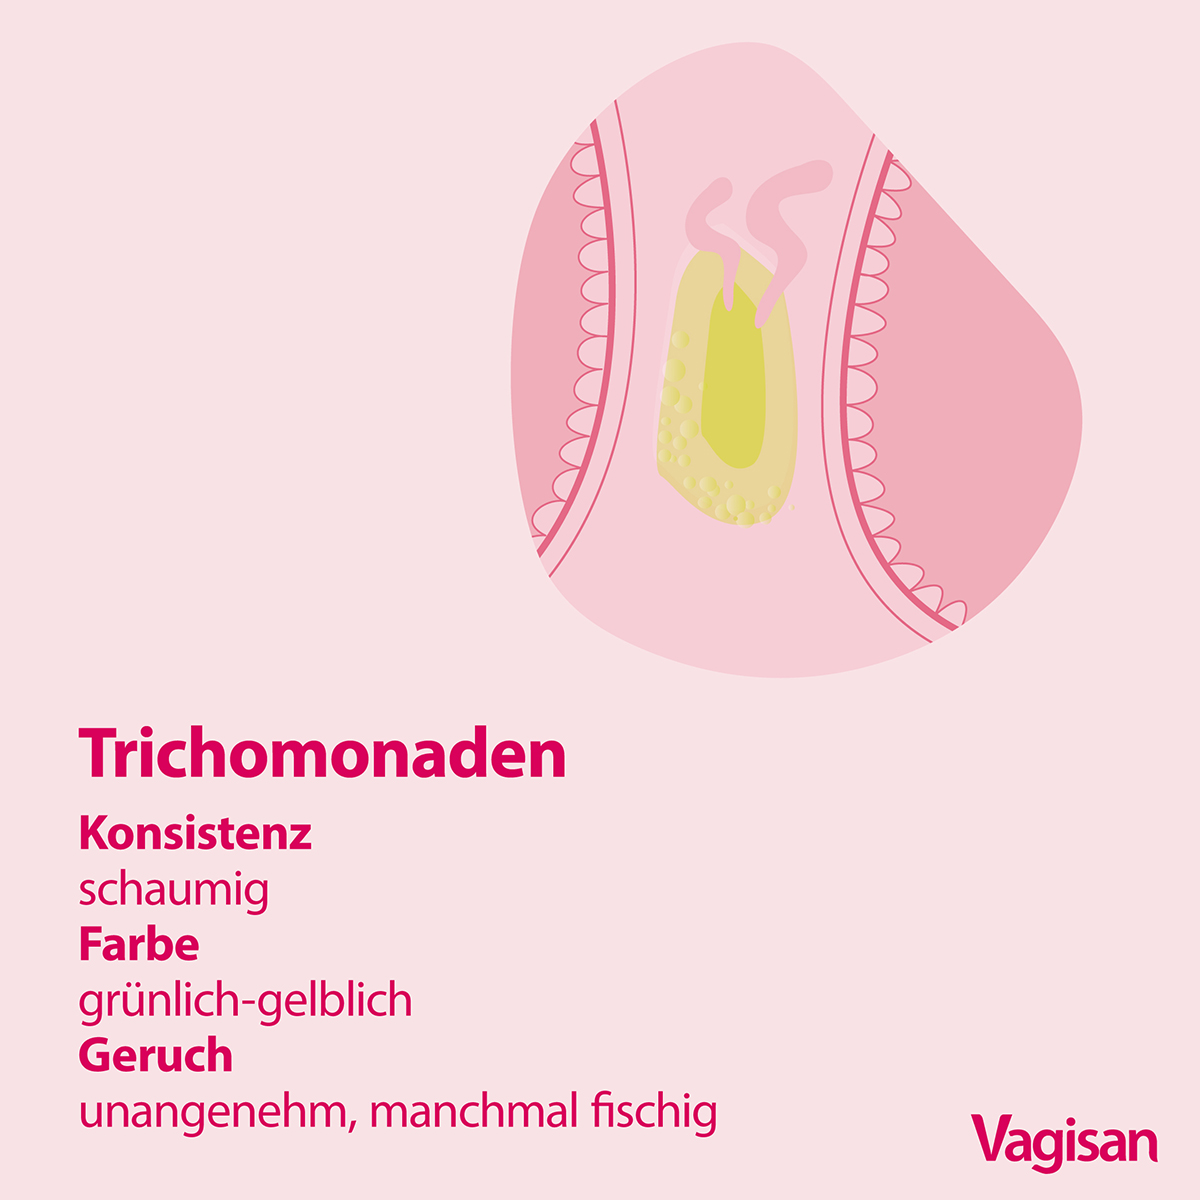 Illustration eines Slips mit grün-gelbem Scheidenausfluss und Angaben zu Konsistenz und fischigem Geruch bei einer Infektion mit Trichomonaden 